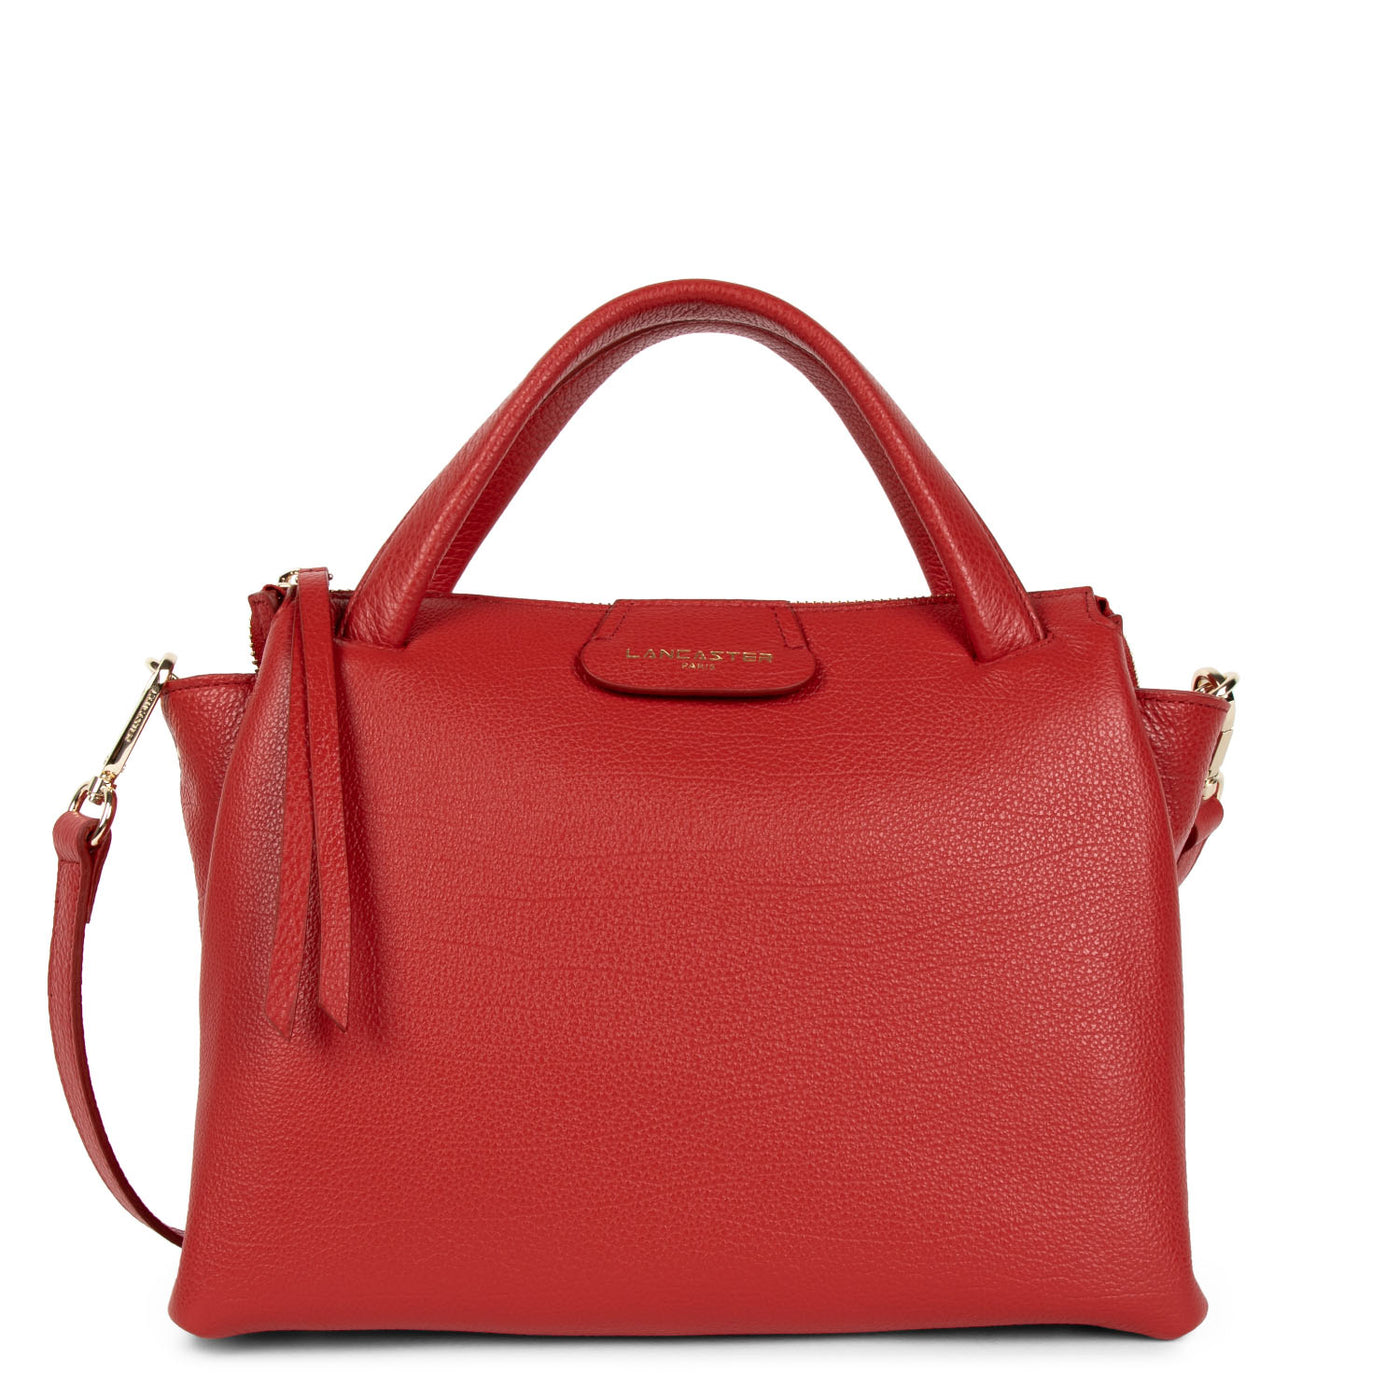 sac à main - dune #couleur_rouge